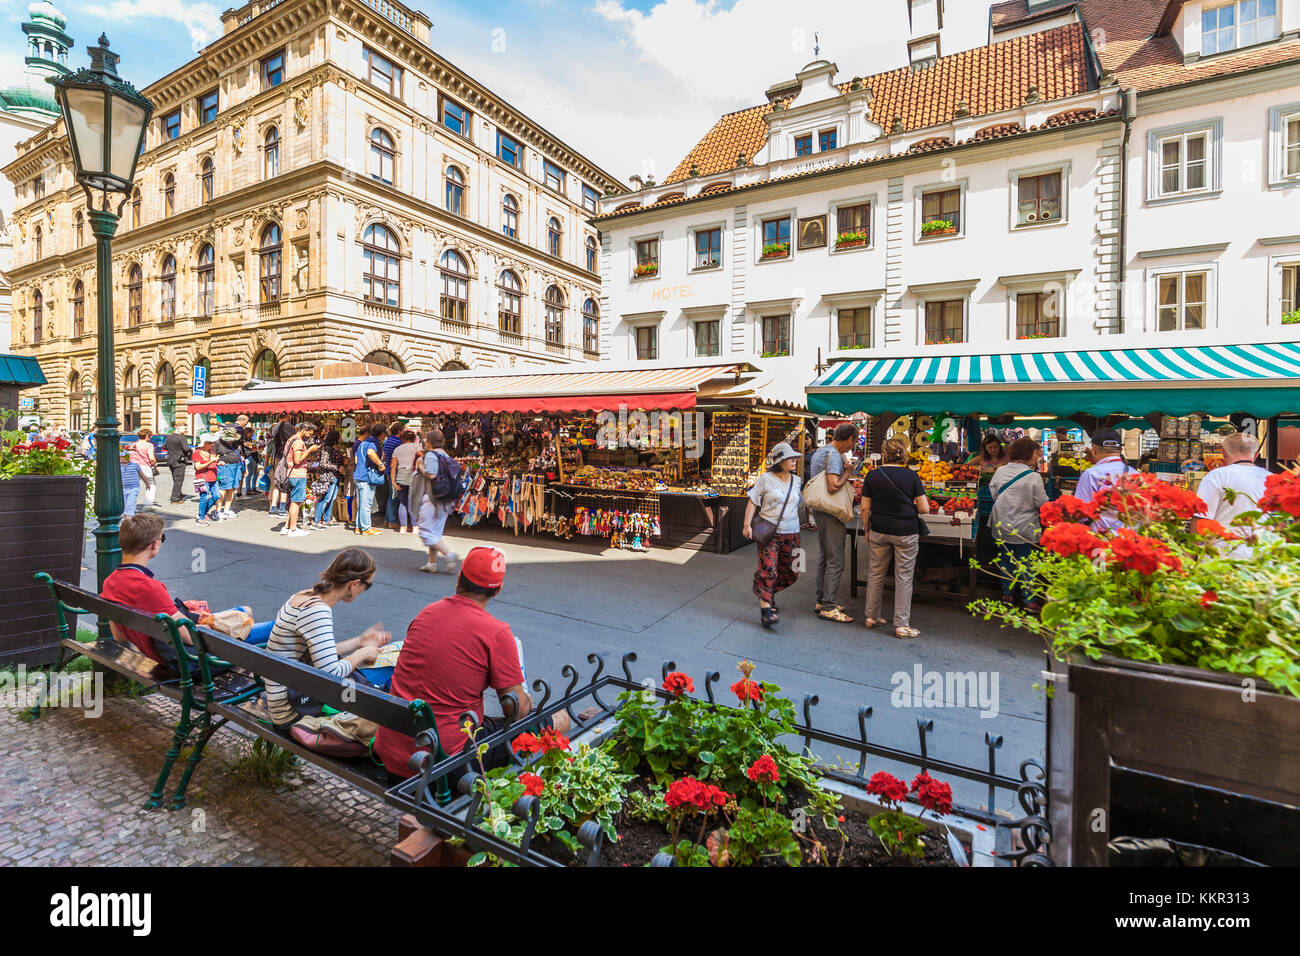 Tschechien, Prag, Altstadt, Marktplatz, Havel Square, havelsky trh, Marktstände, Obst- und Gemüsemarkt, Souvenirs Stockfoto